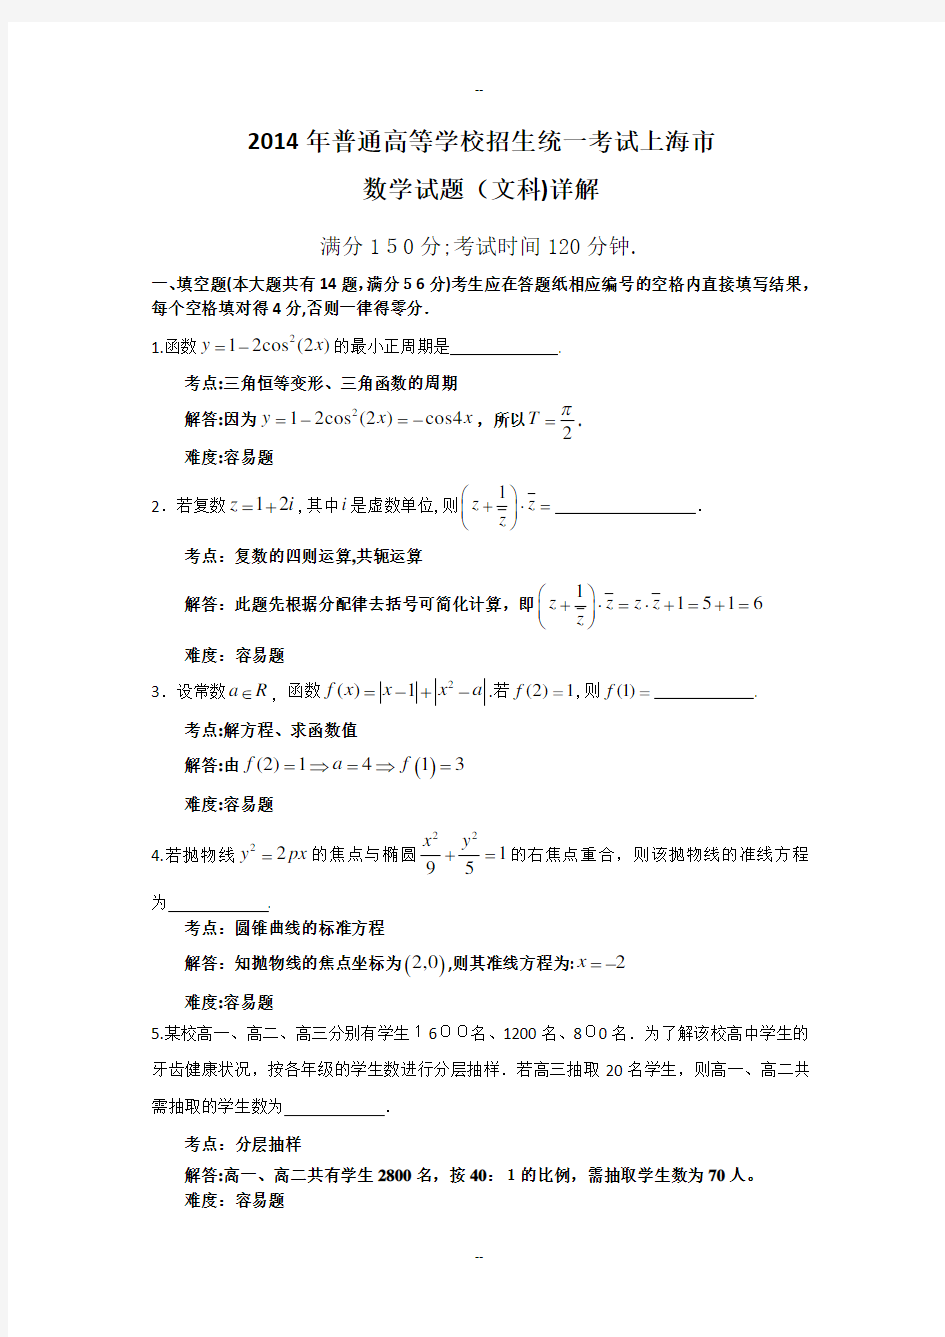 上海高考文科数学试题详解